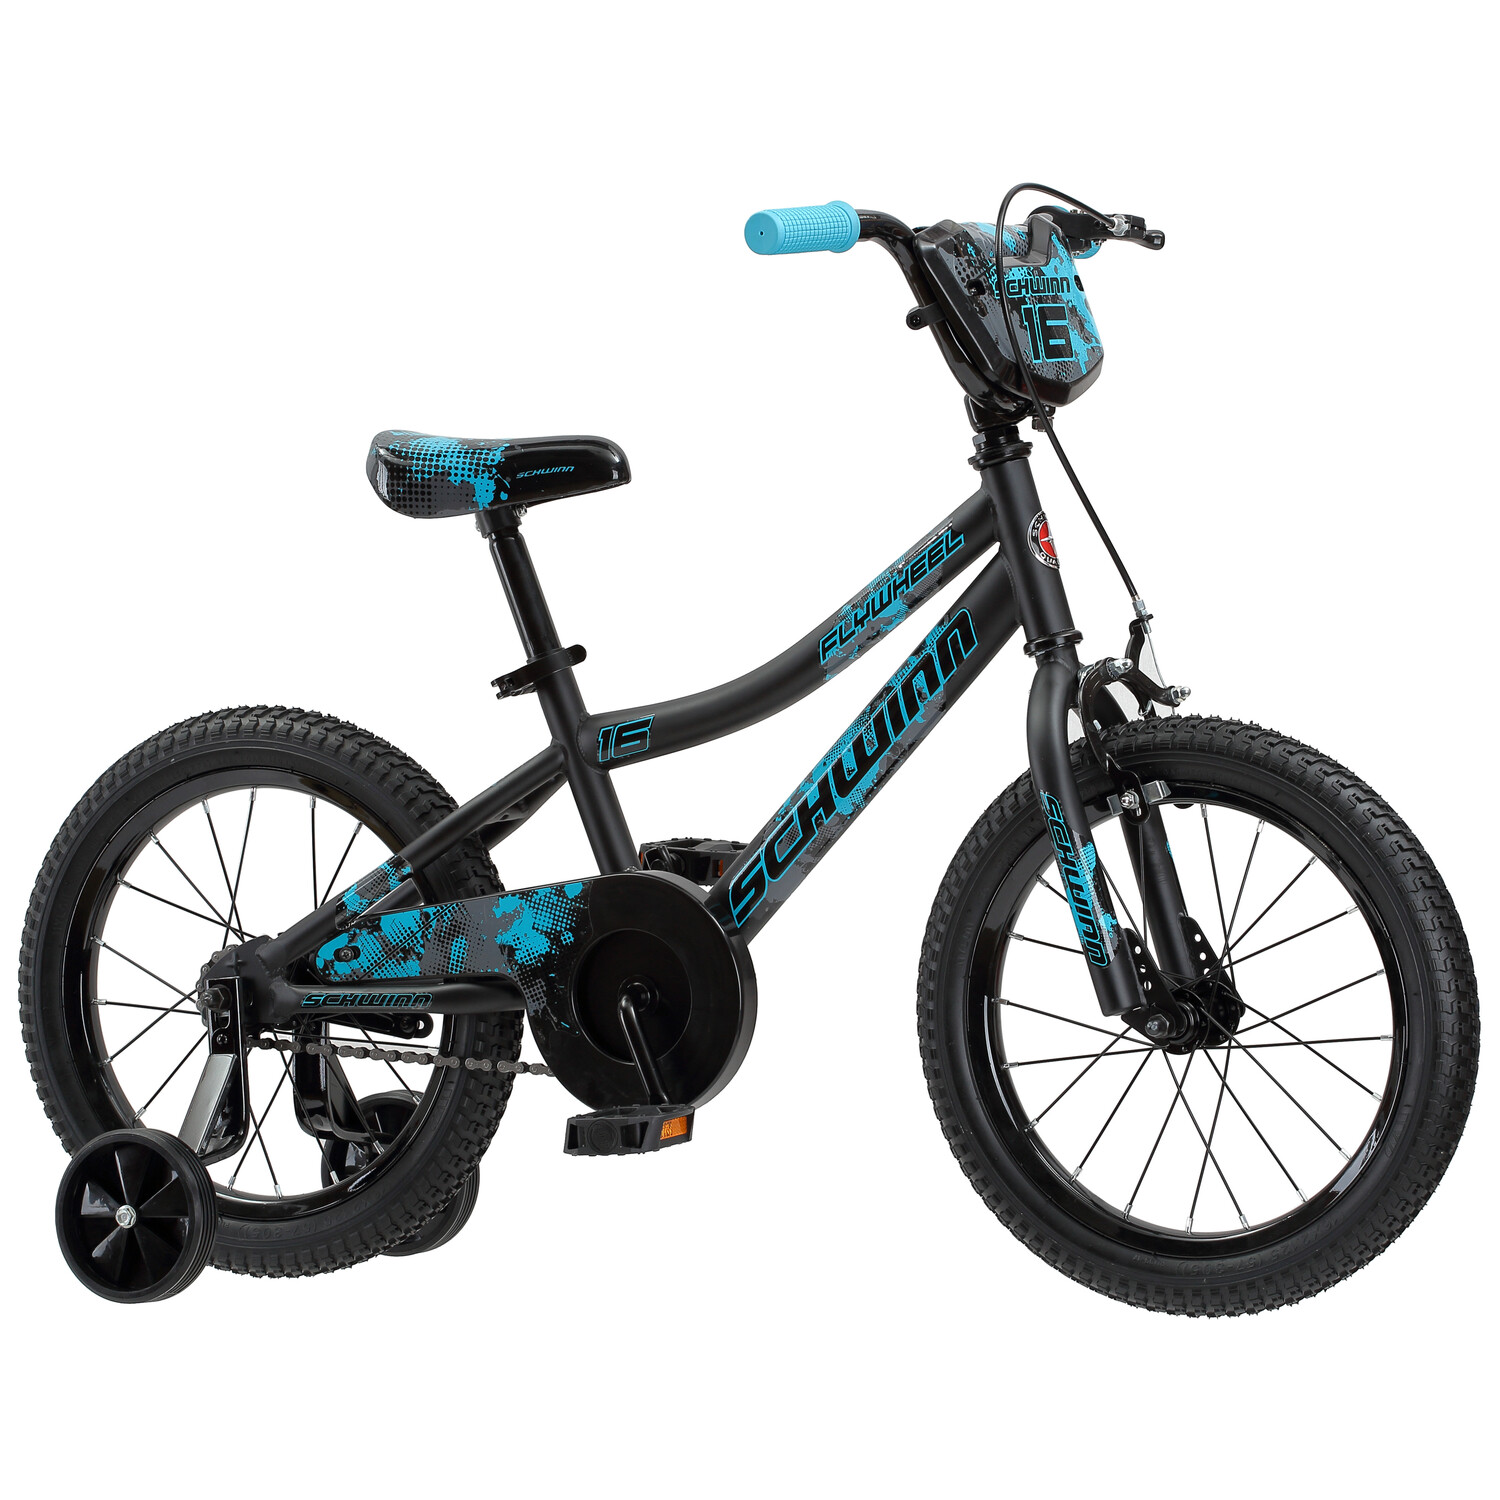 Schwinn Flywheel Smartstart Bike, 16 inch Wheels, Single Speed, Black/Blue - image 4 of 4